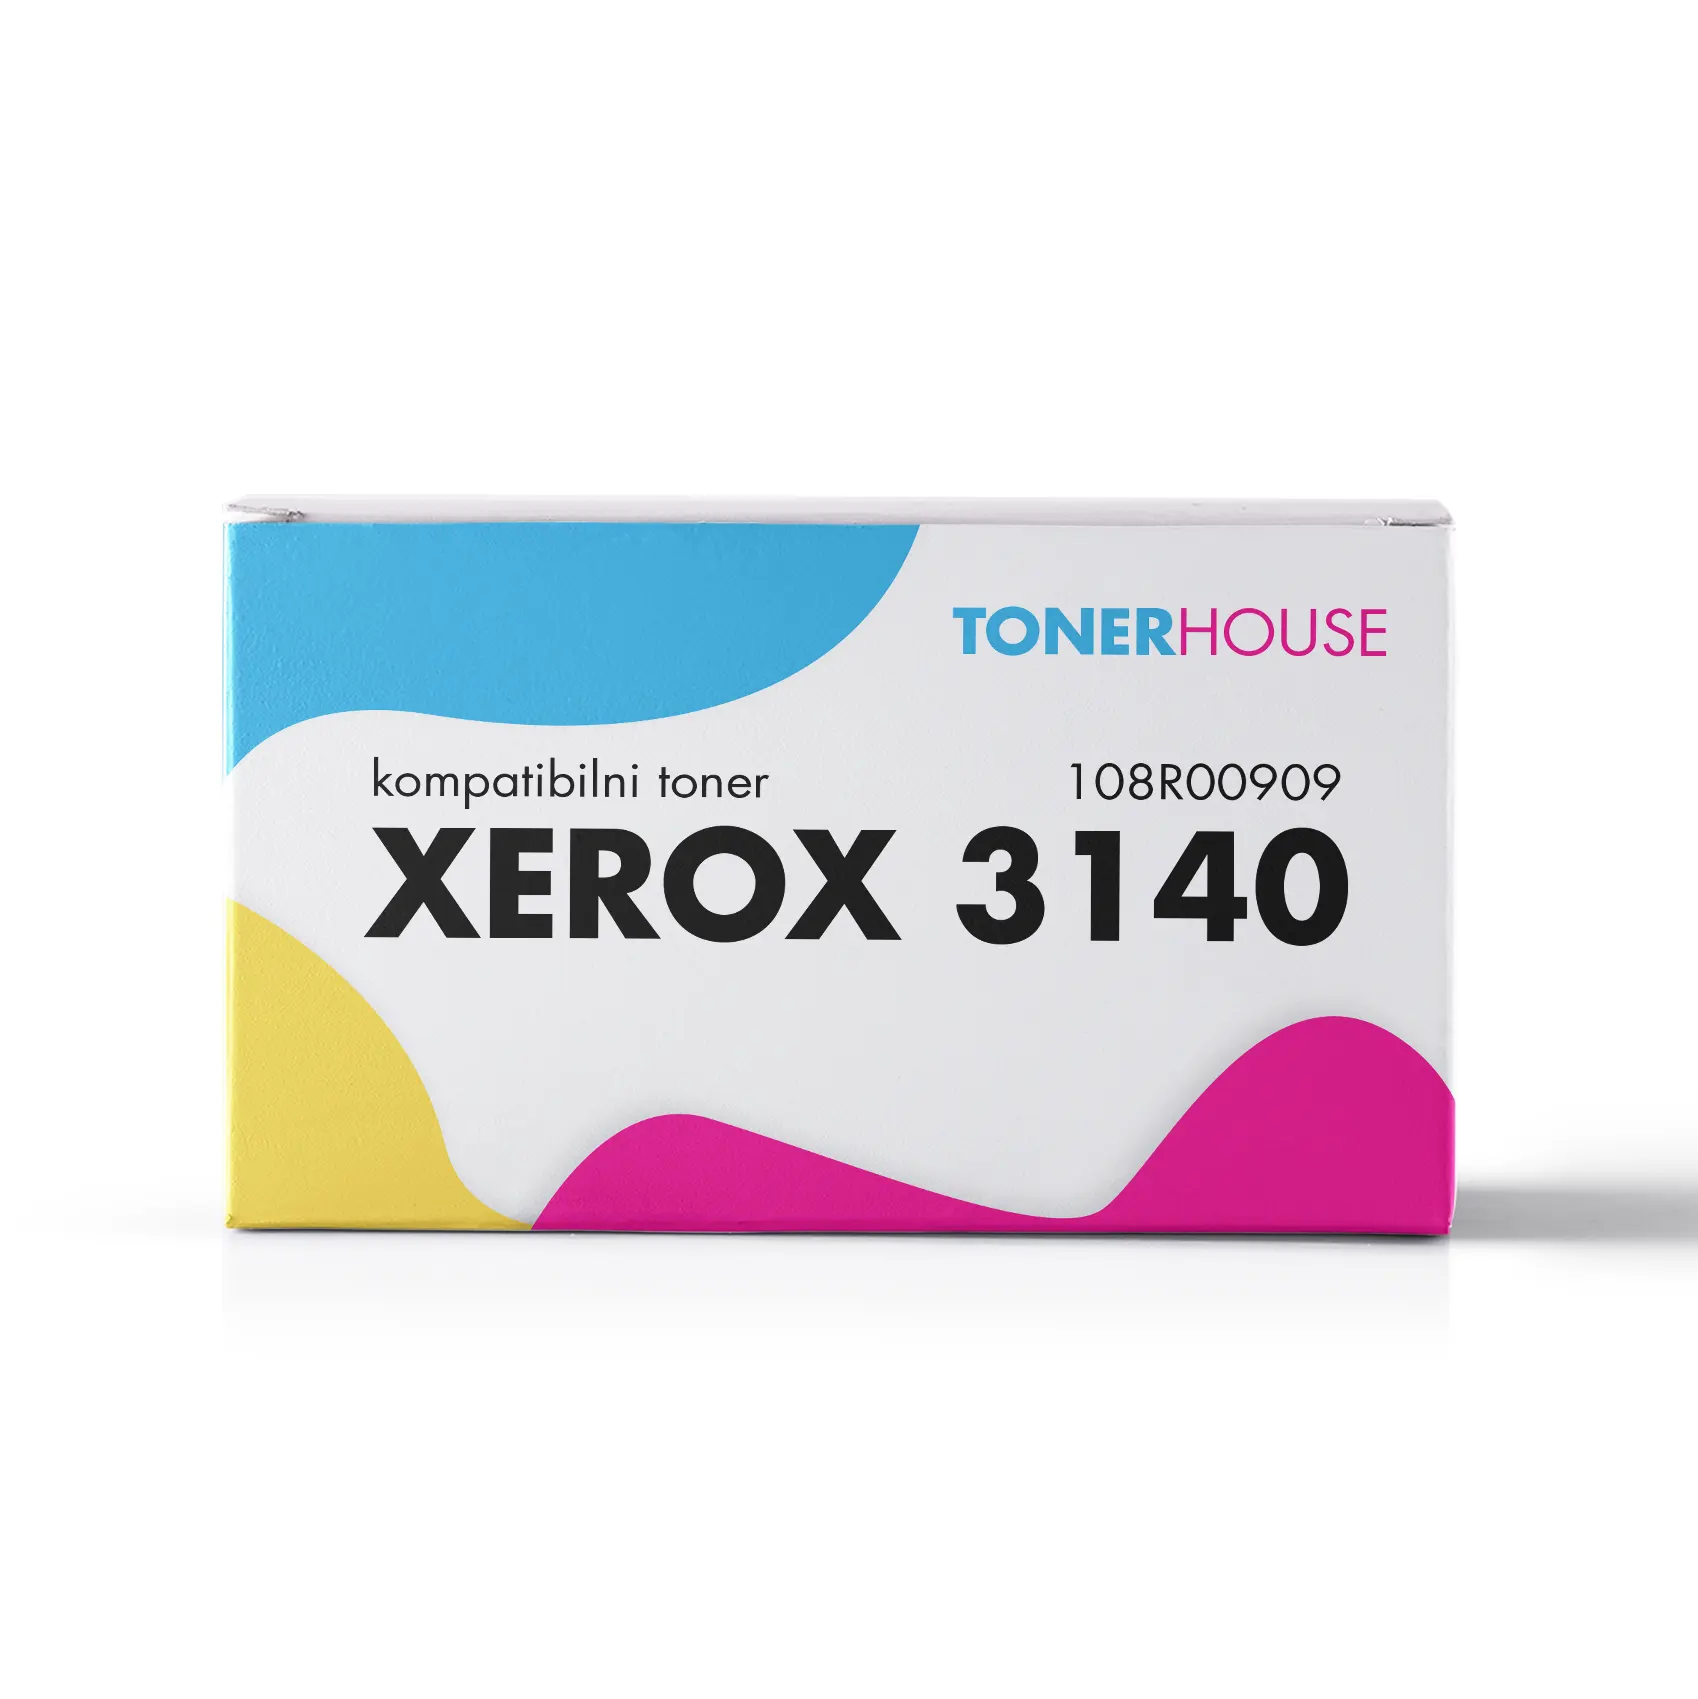 Xerox 3140 Toner Kompatibilni